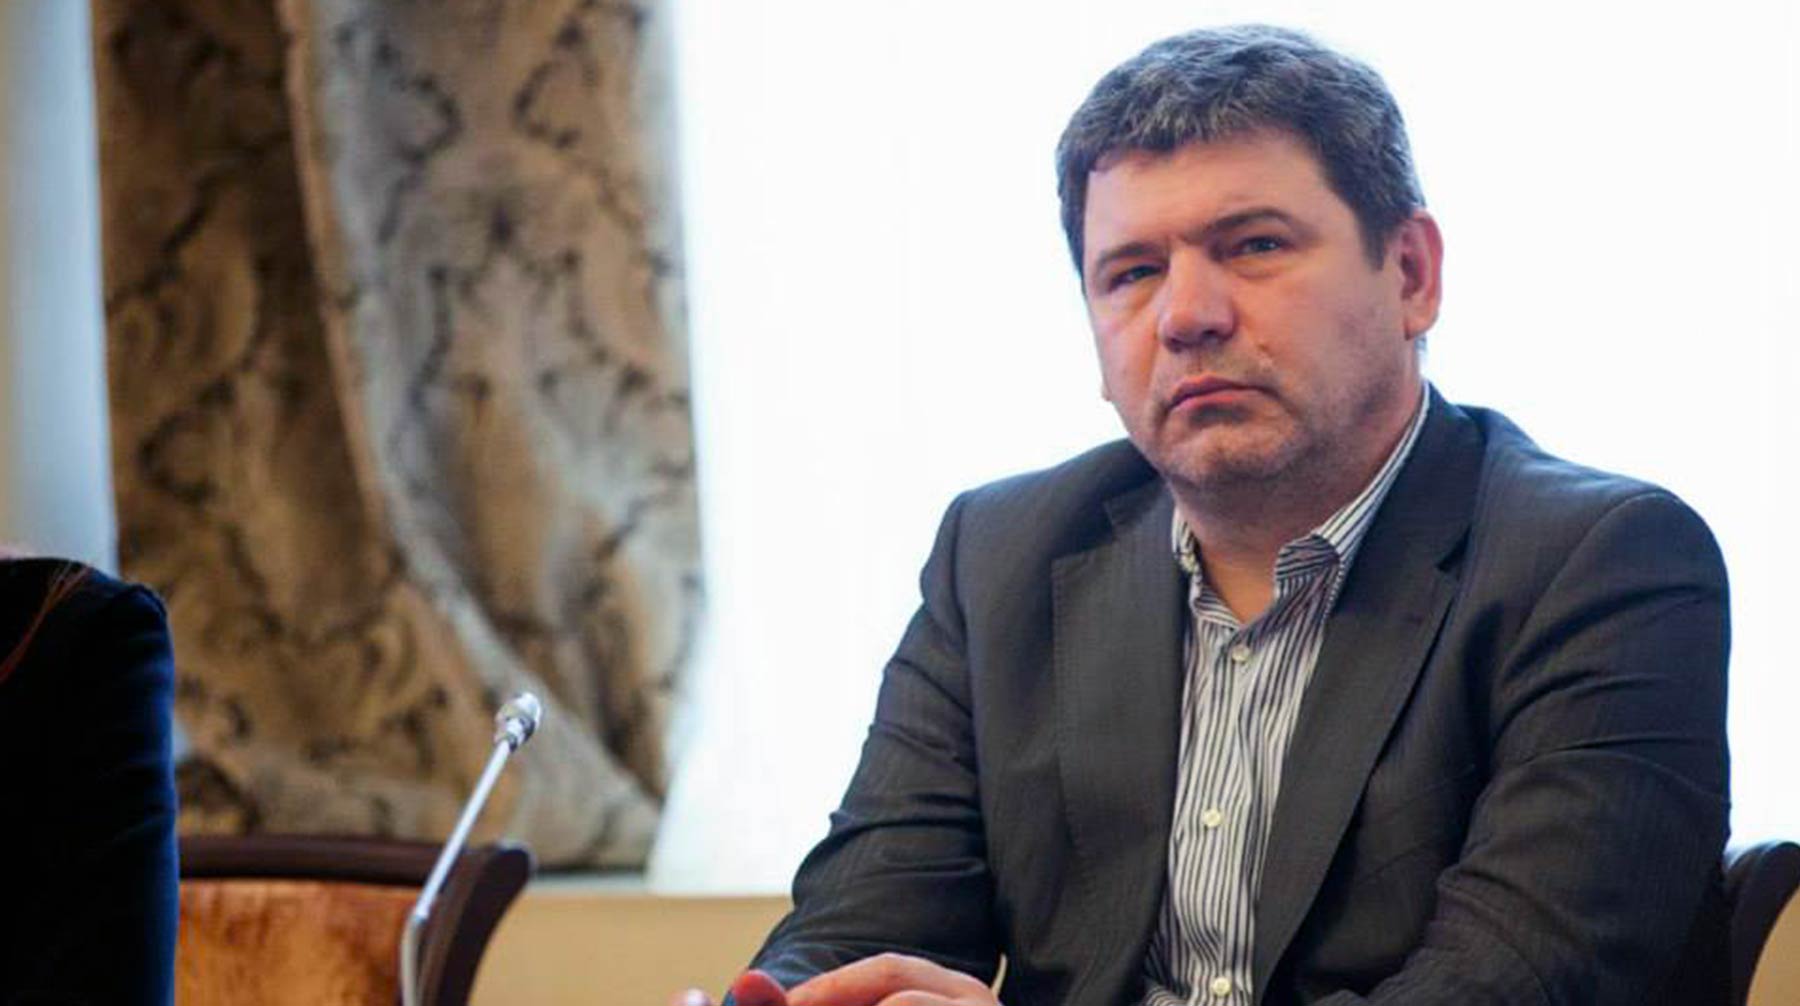 Вадим Горшенин уточнил, что приостановить членство правозащитника в комиссии может только Общественная палата Вадим Горшенин